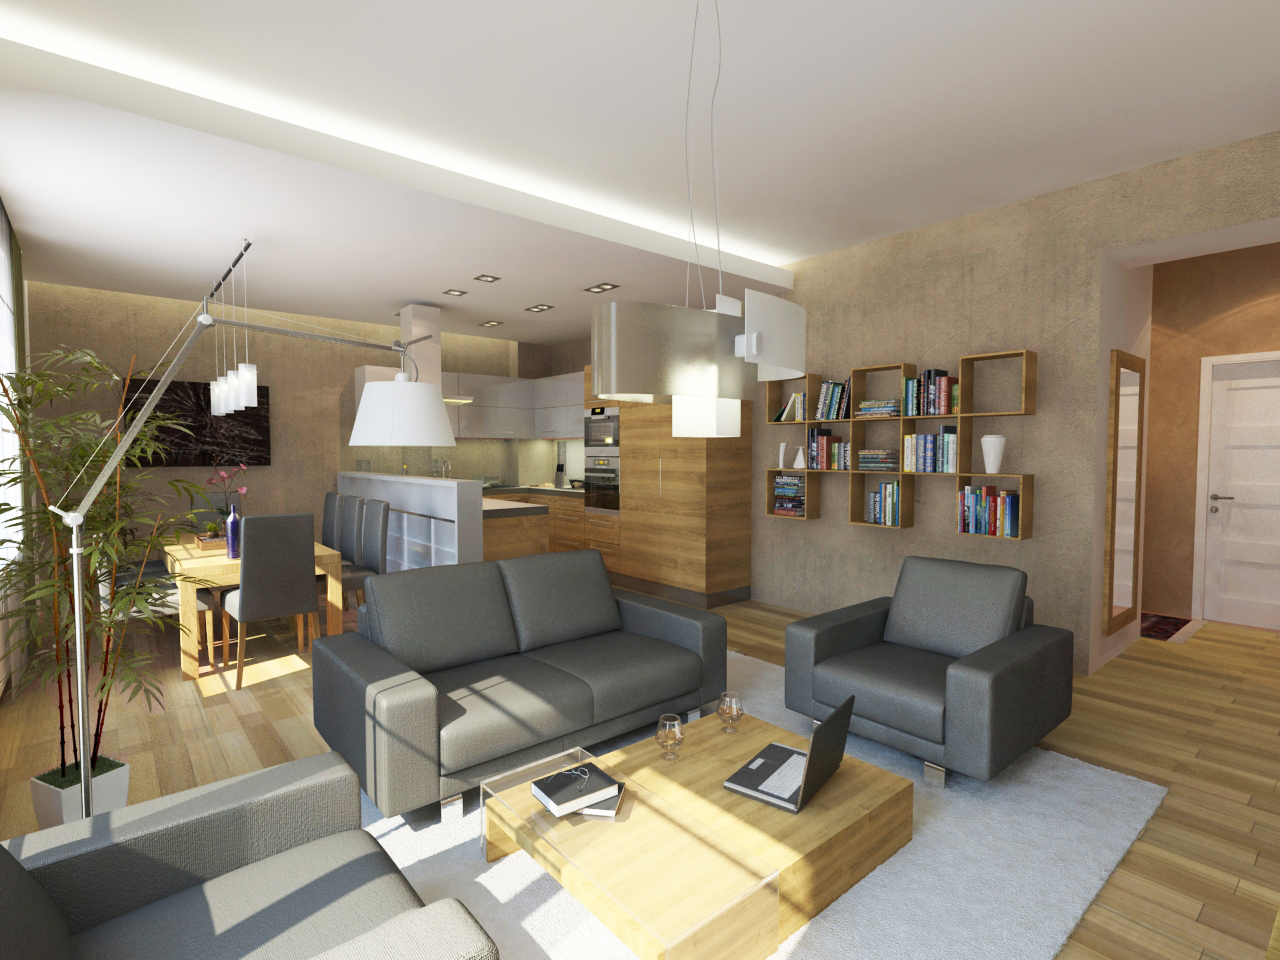 Látványterv nappali / Architectural visualization living room